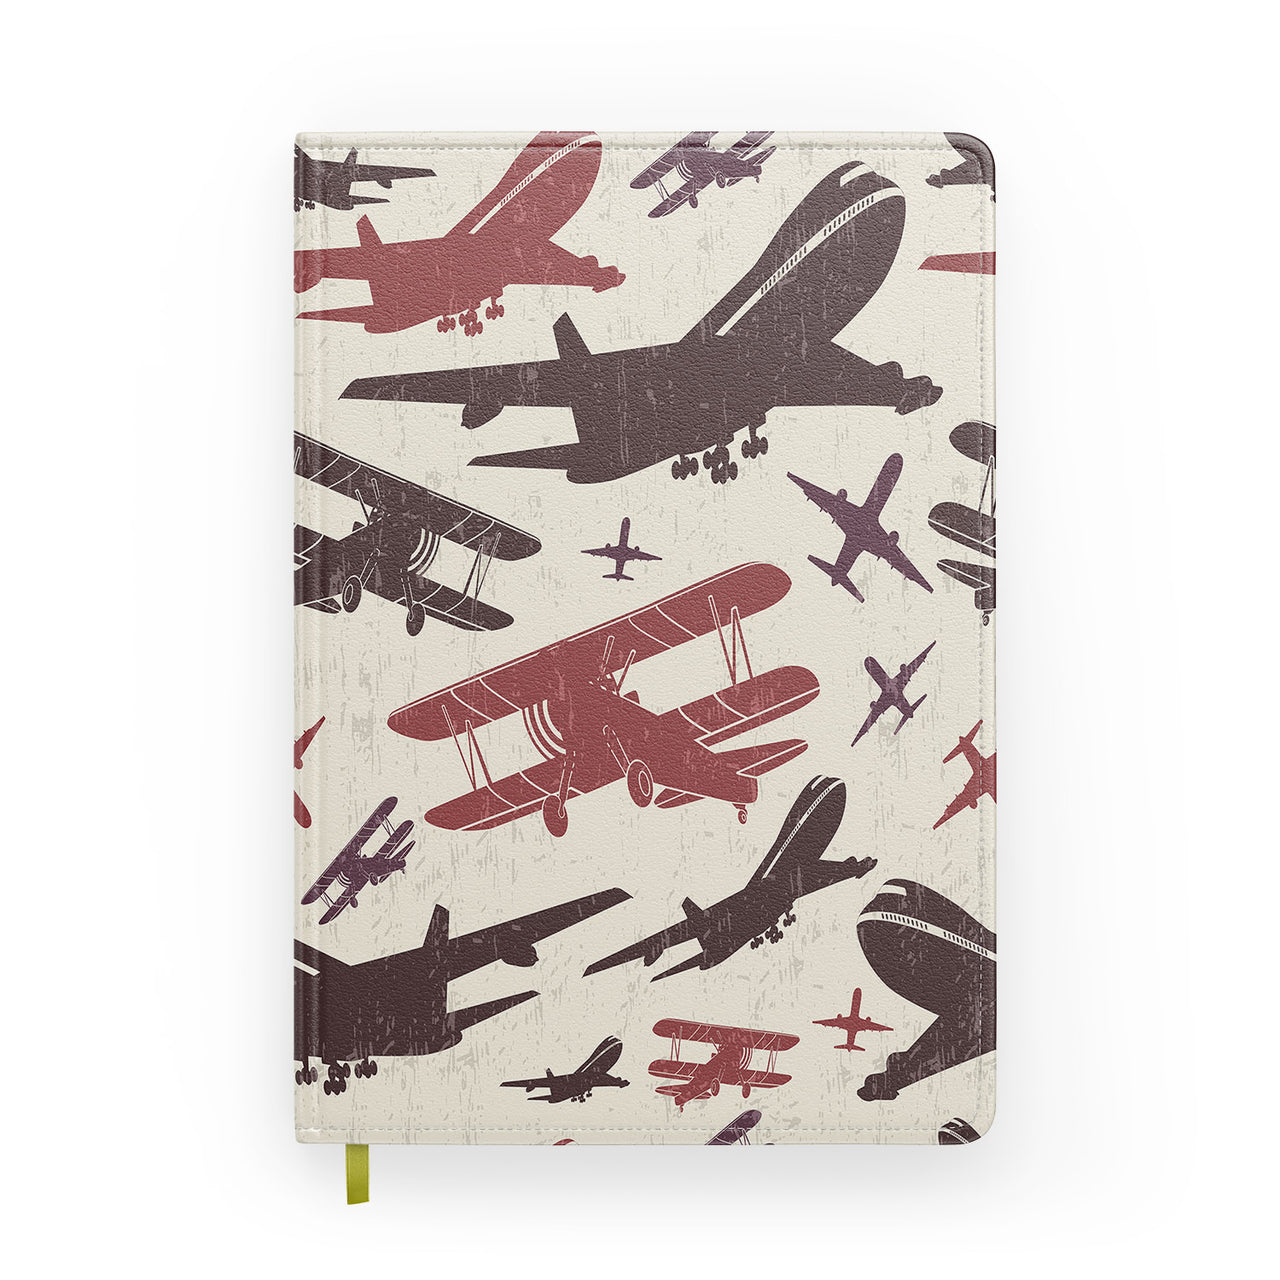 Vintage & Jumbo Airplanes Designed Notebooks